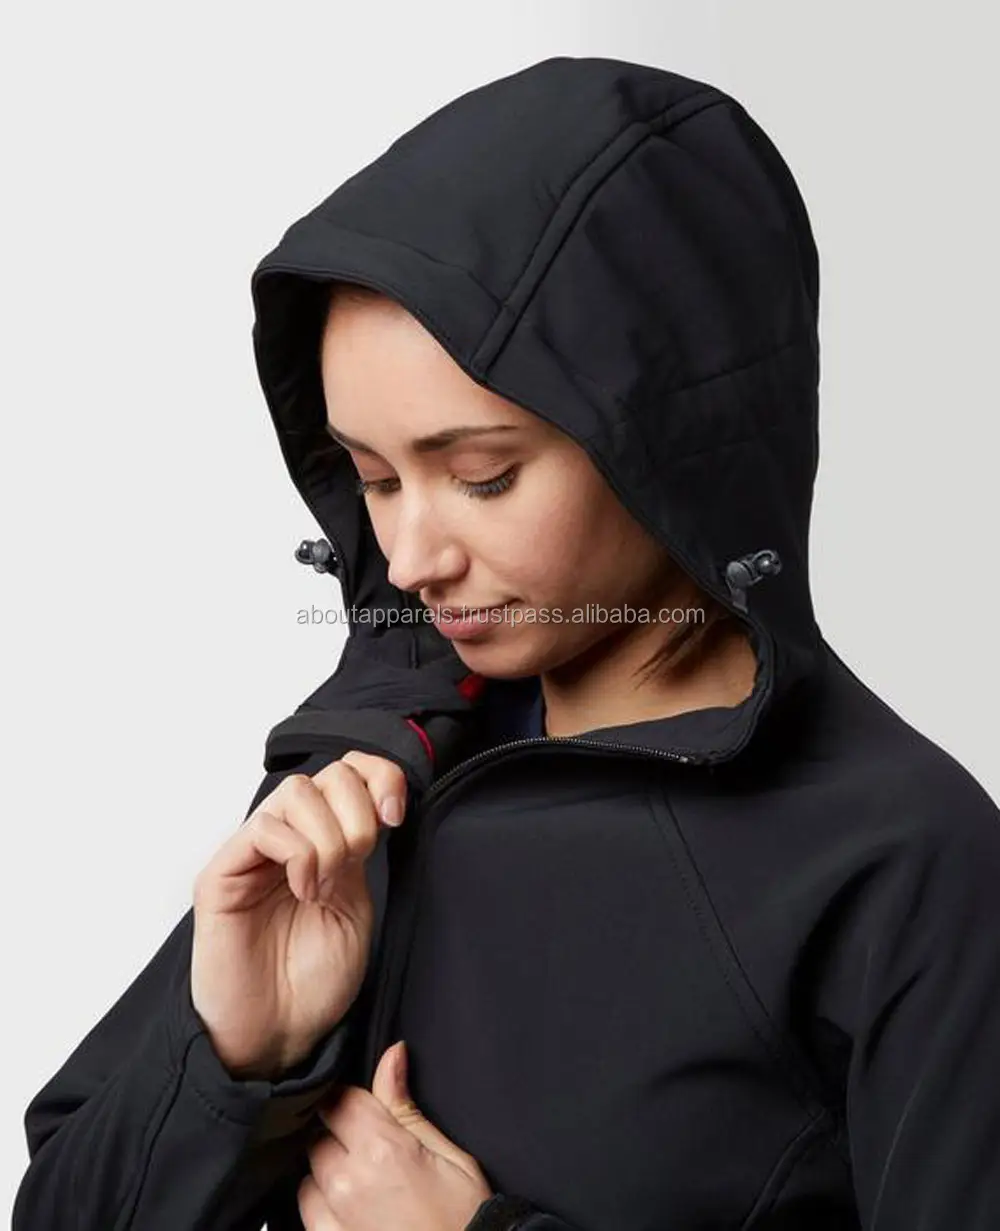 Toplu moda kadınlar için yeni model toptan 100% polyamid kayak yürüyüş yumuşak yüzeyli ceket mont